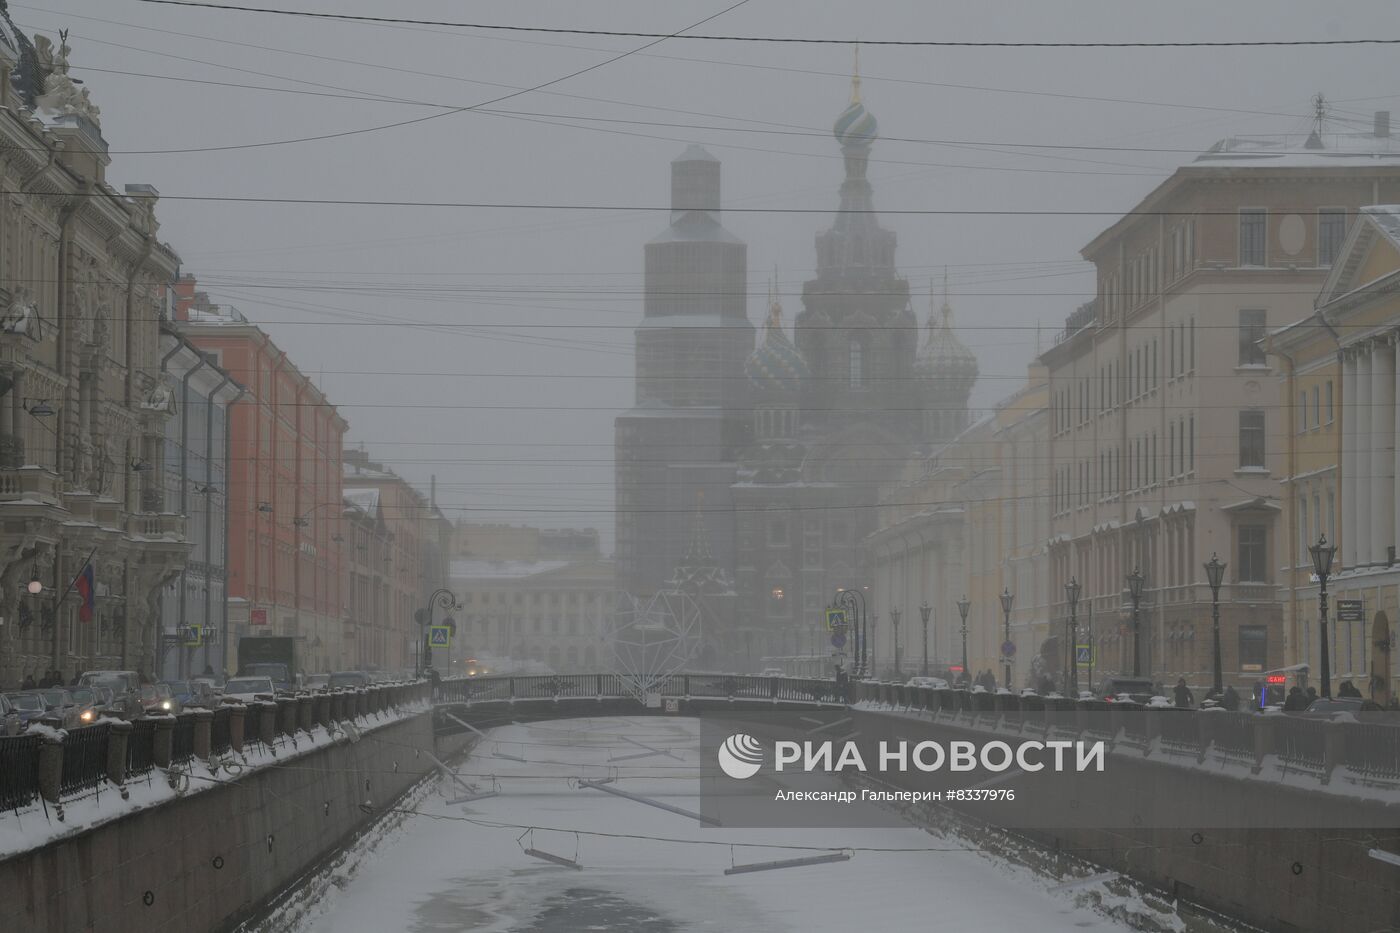 Южный циклон принес в Санкт-Петербург снежный шторм